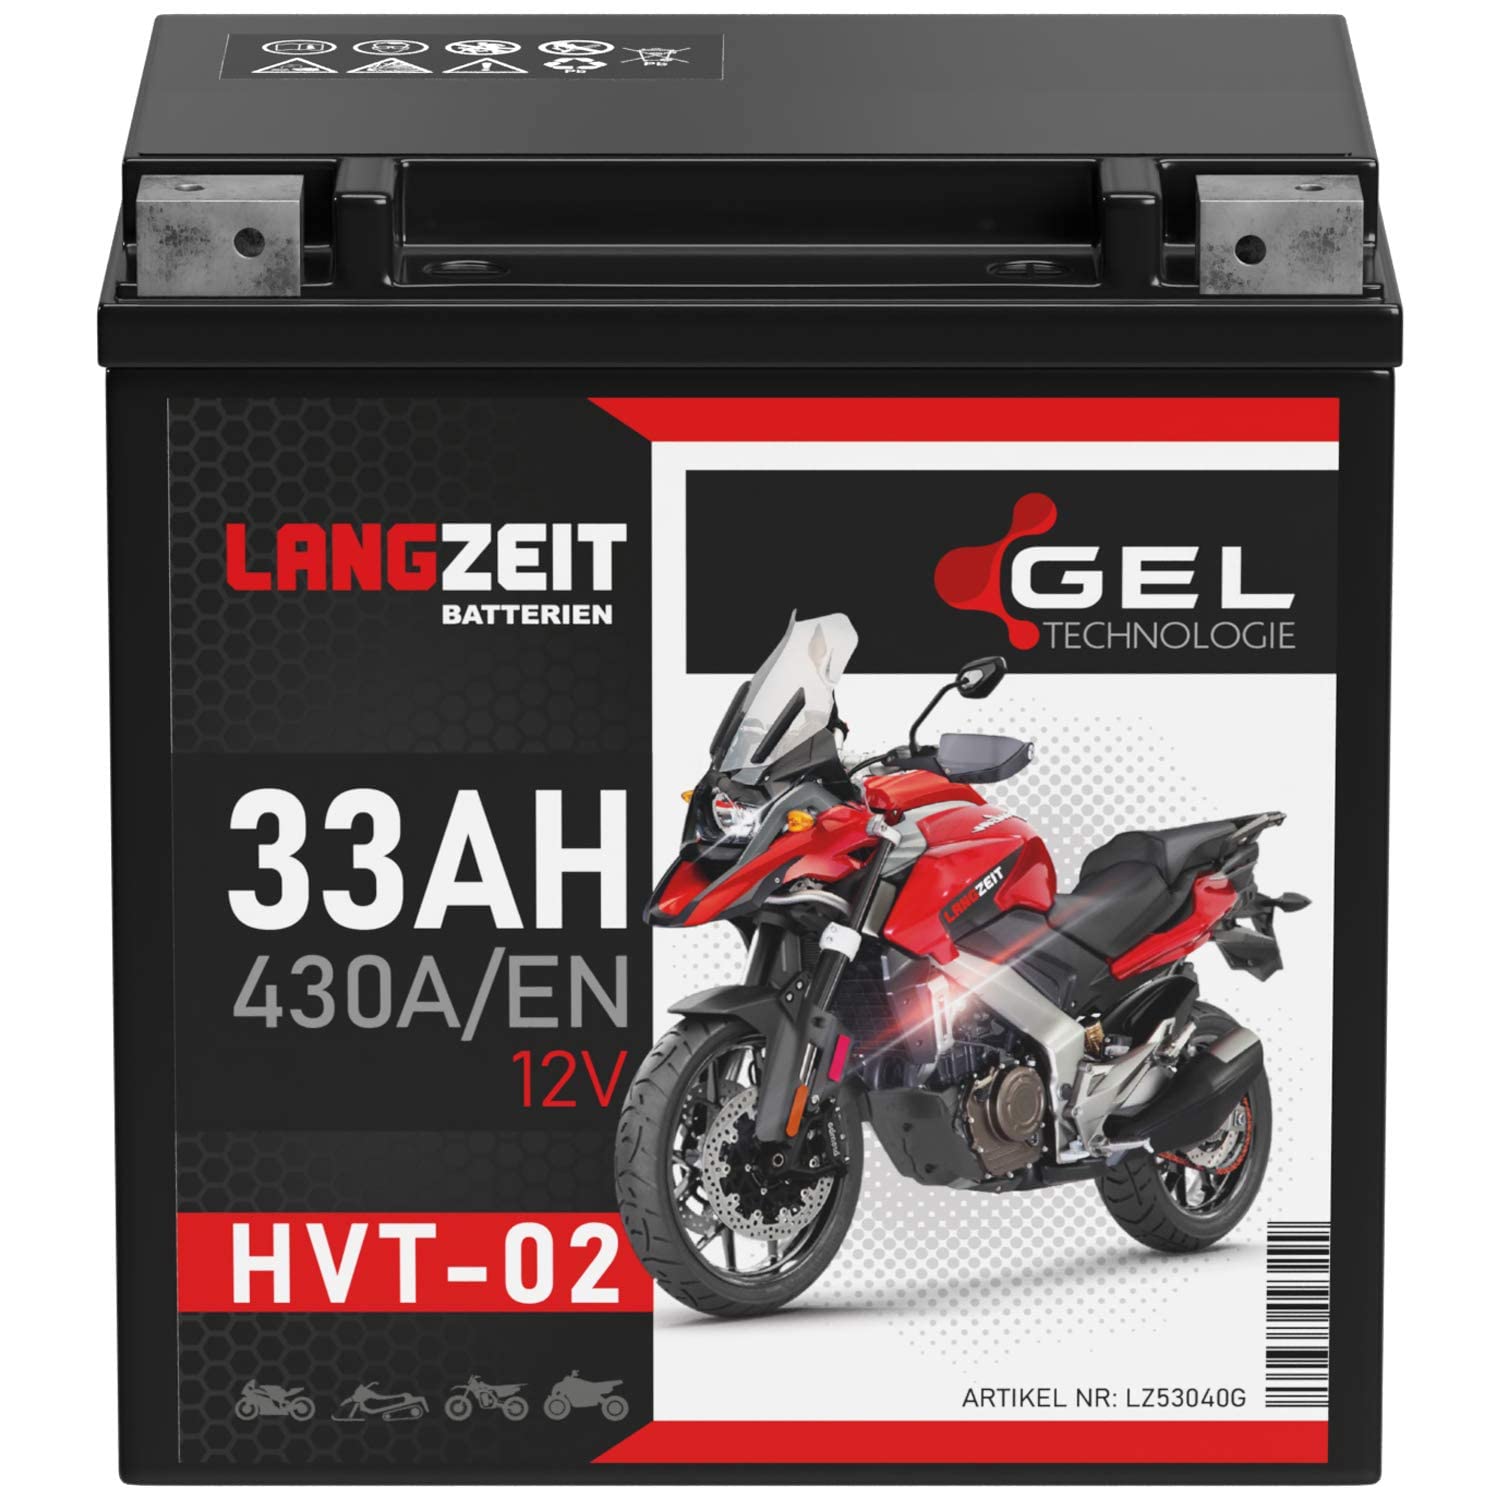 LANGZEIT HVT-02 HVT-2 Motorradbatterie GEL 12V 33Ah 430A/EN Gel Batterie 12V YB30L-B YIX30L-BS 53040 doppelte Lebensdauer vorgeladen auslaufsicher wartungsfrei ersetzt 32Ah 30Ah von LANGZEIT Batterien